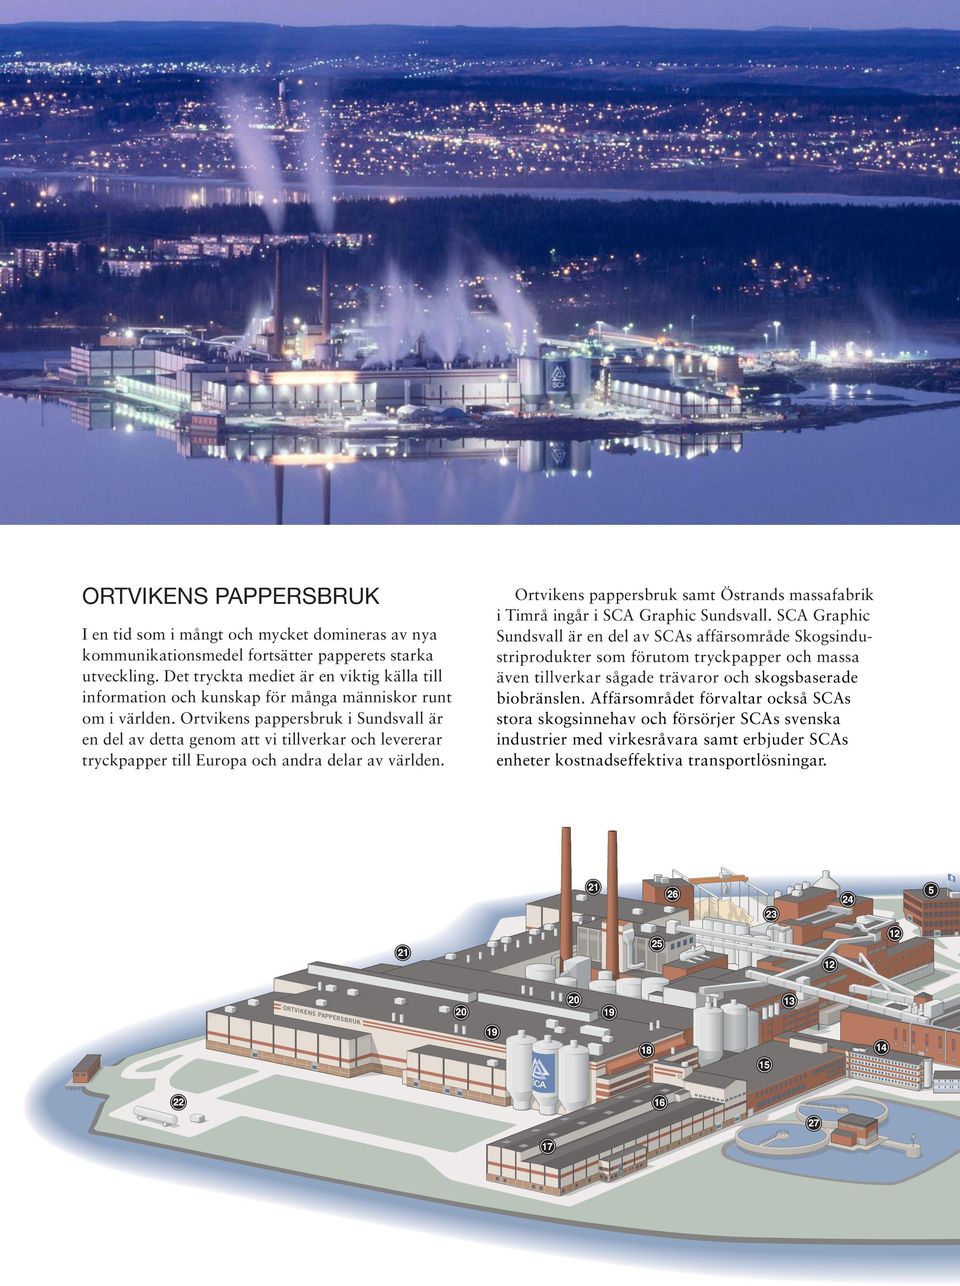 Ortvikens pappersbruk i Sundsvall är en del av detta genom att vi tillverkar och levererar tryckpapper till Europa och andra delar av världen.